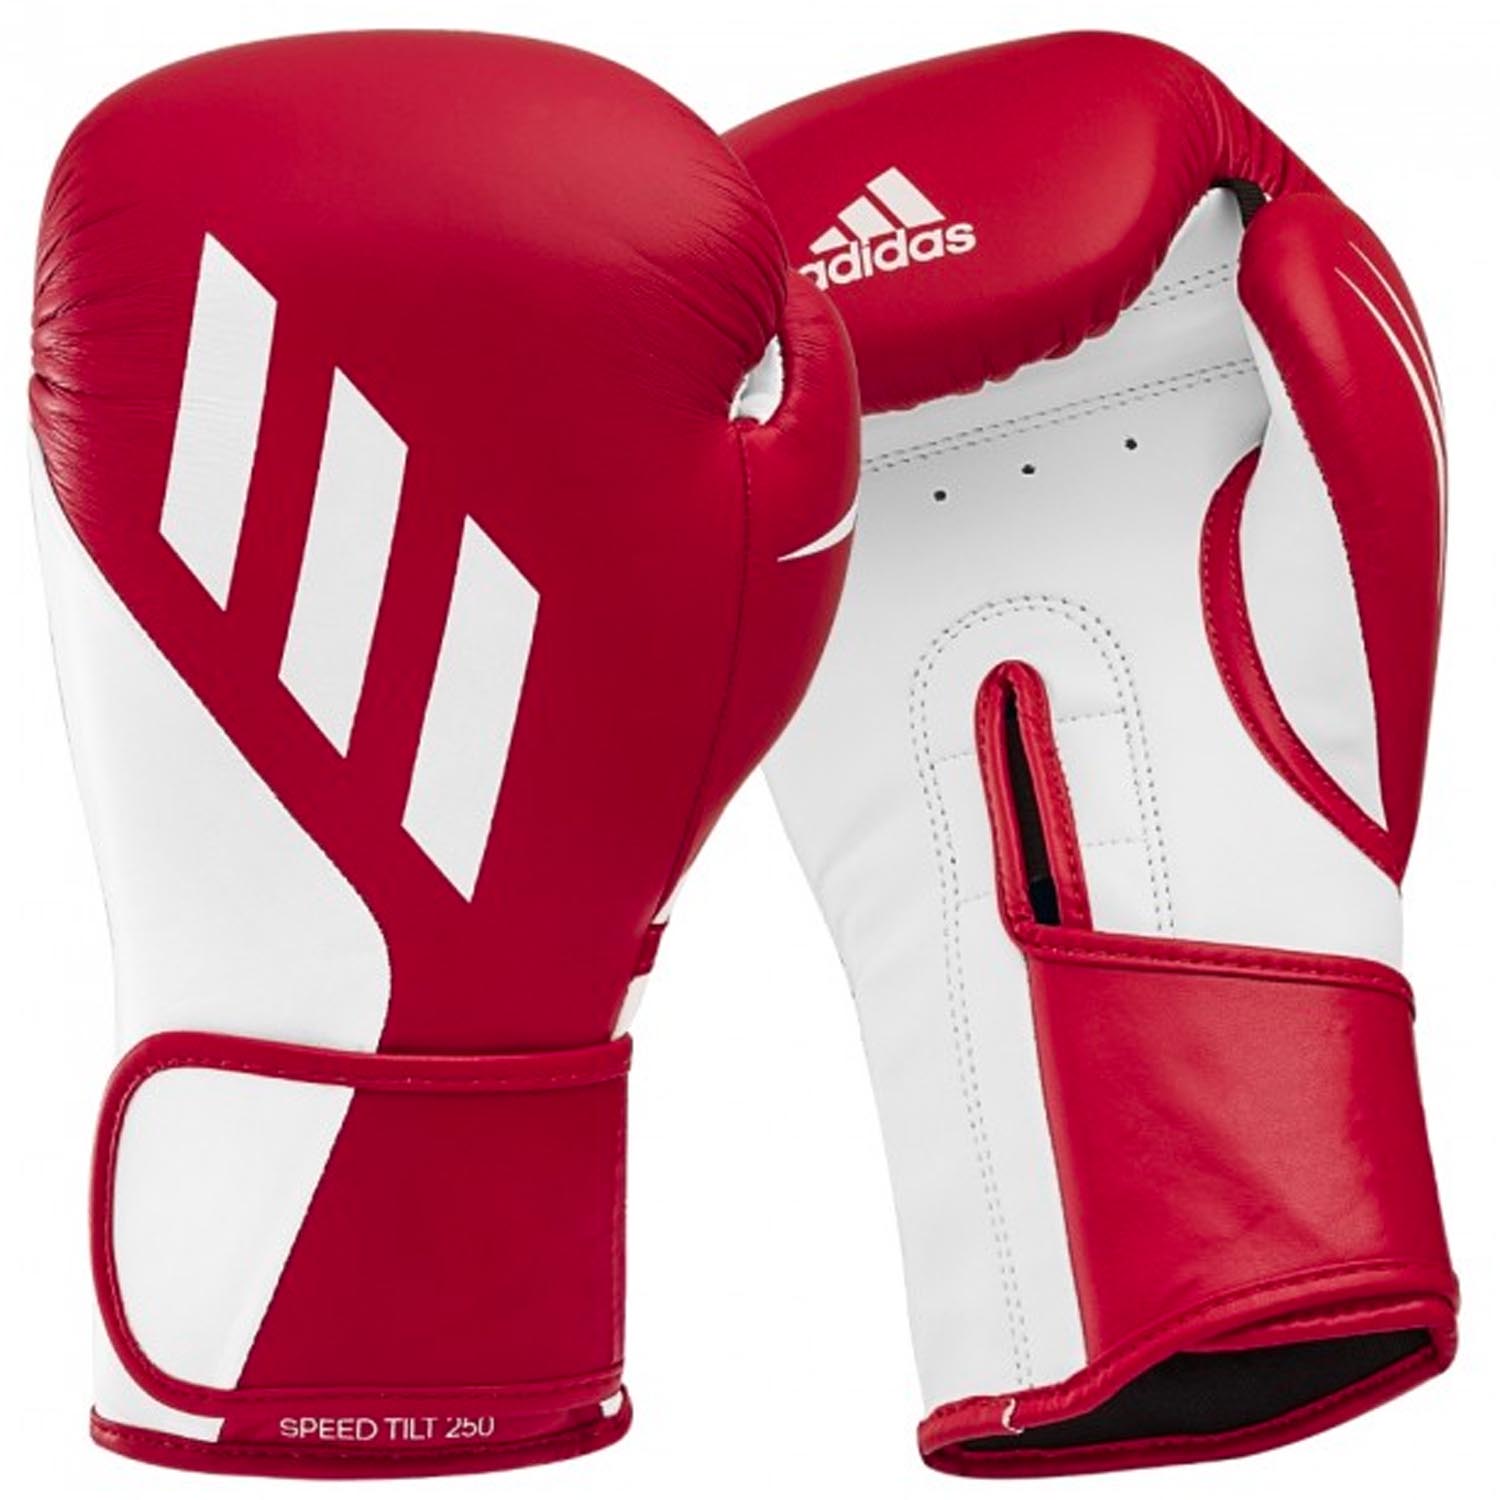 adidas Boxing Gloves, Speed, Tilt, 250, red-white, 12 Oz